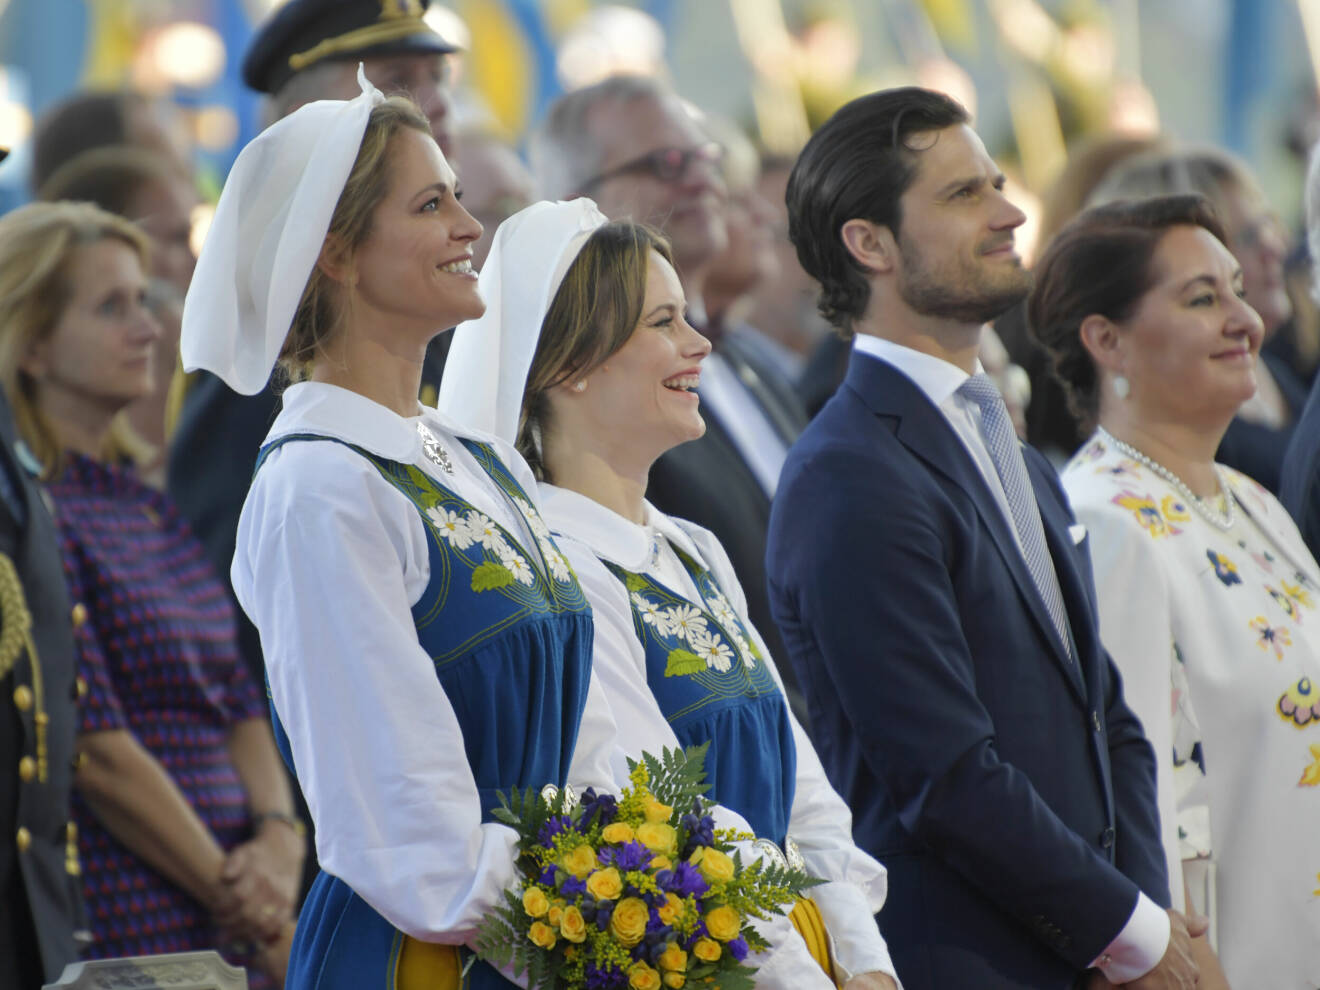 Prinsessan Madeleine, prinsessan Sofia och prins Carl Philip under det traditionsenliga nationaldagsfirandet på Solliden på Skansen.